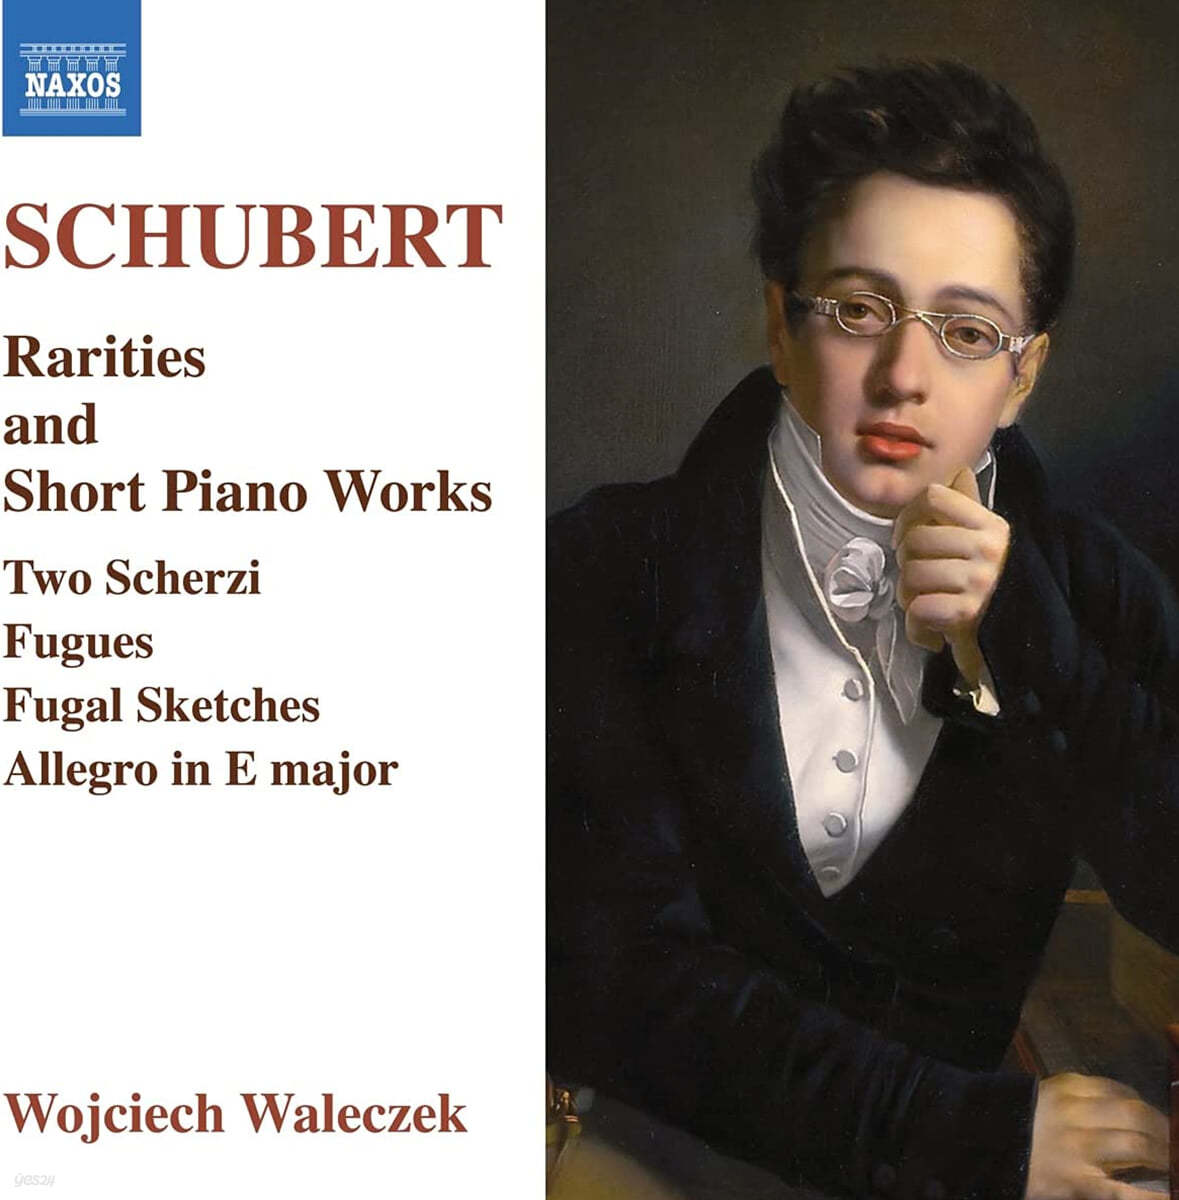 Wojciech Waleczek 슈베르트: 희귀 피아노 작품, 피아노 단편 작품집 (Schubert: Rarities and Short Piano Works) 